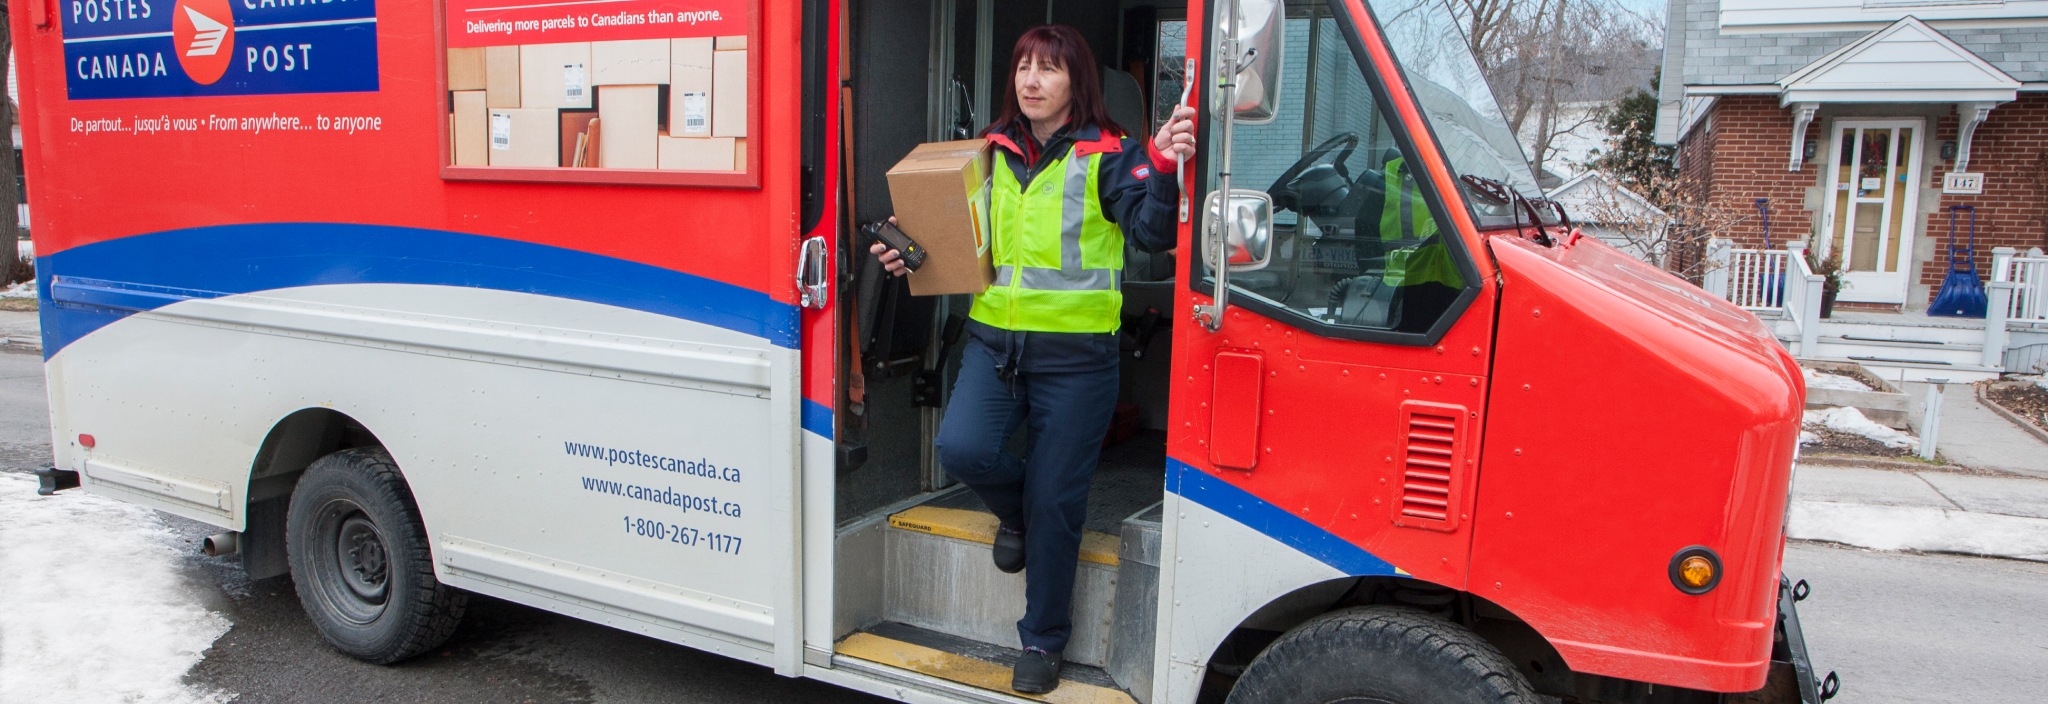 Agente de livraison sortant d’un camion de Postes Canada dans un quartier résidentiel pour livrer un colis